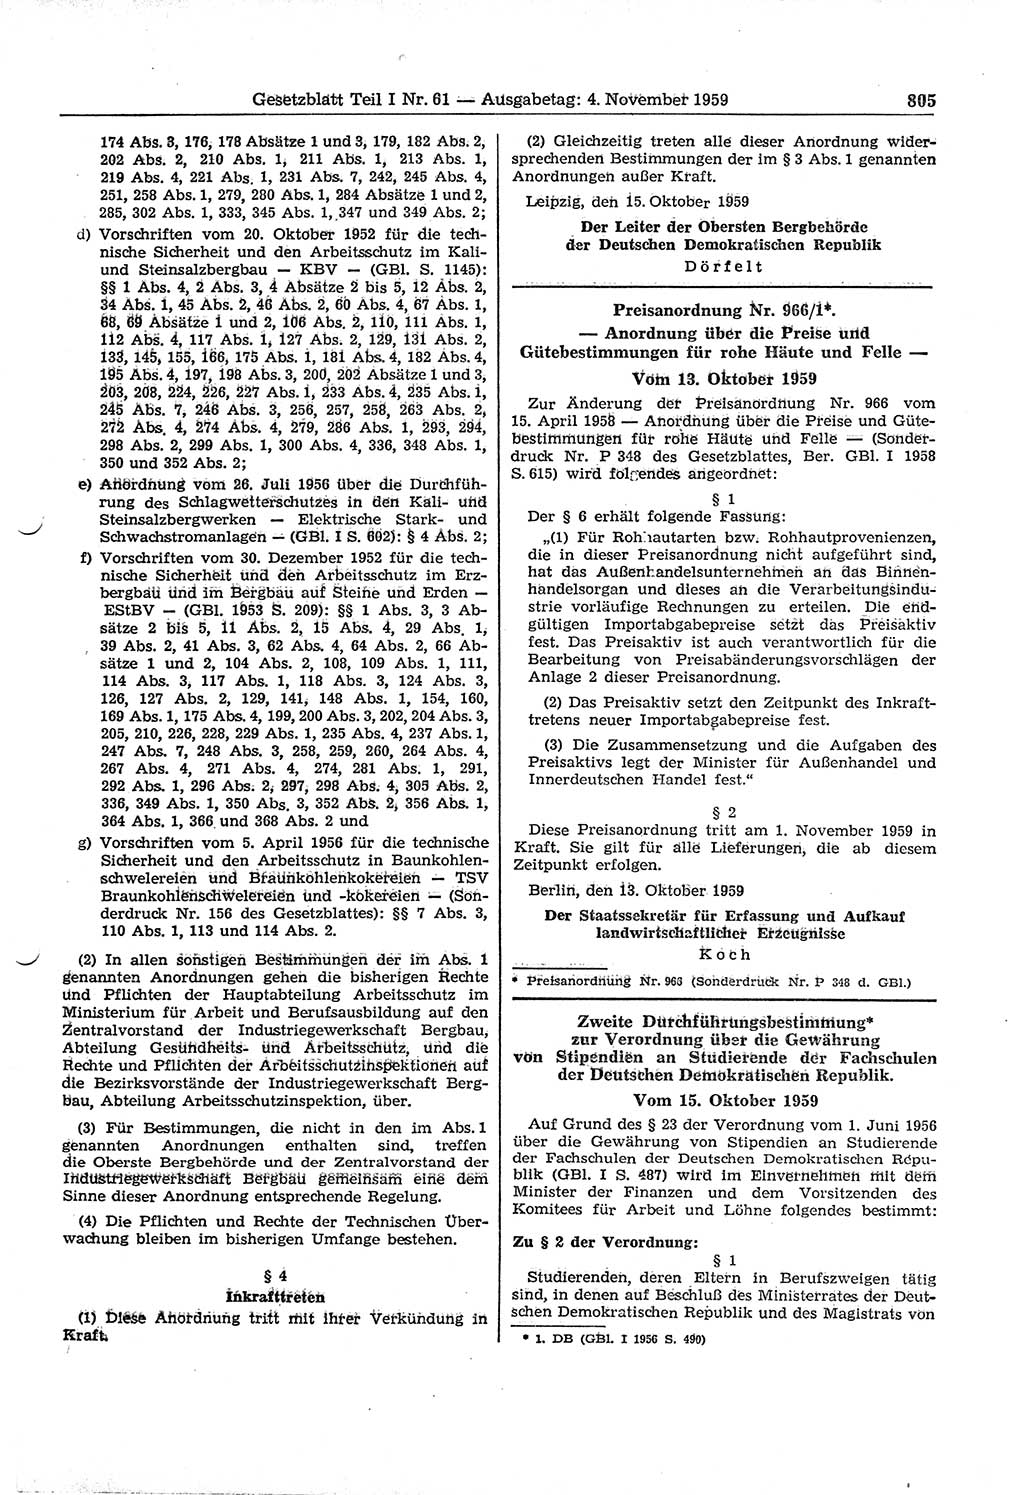 Gesetzblatt (GBl.) der Deutschen Demokratischen Republik (DDR) Teil Ⅰ 1959, Seite 805 (GBl. DDR Ⅰ 1959, S. 805)